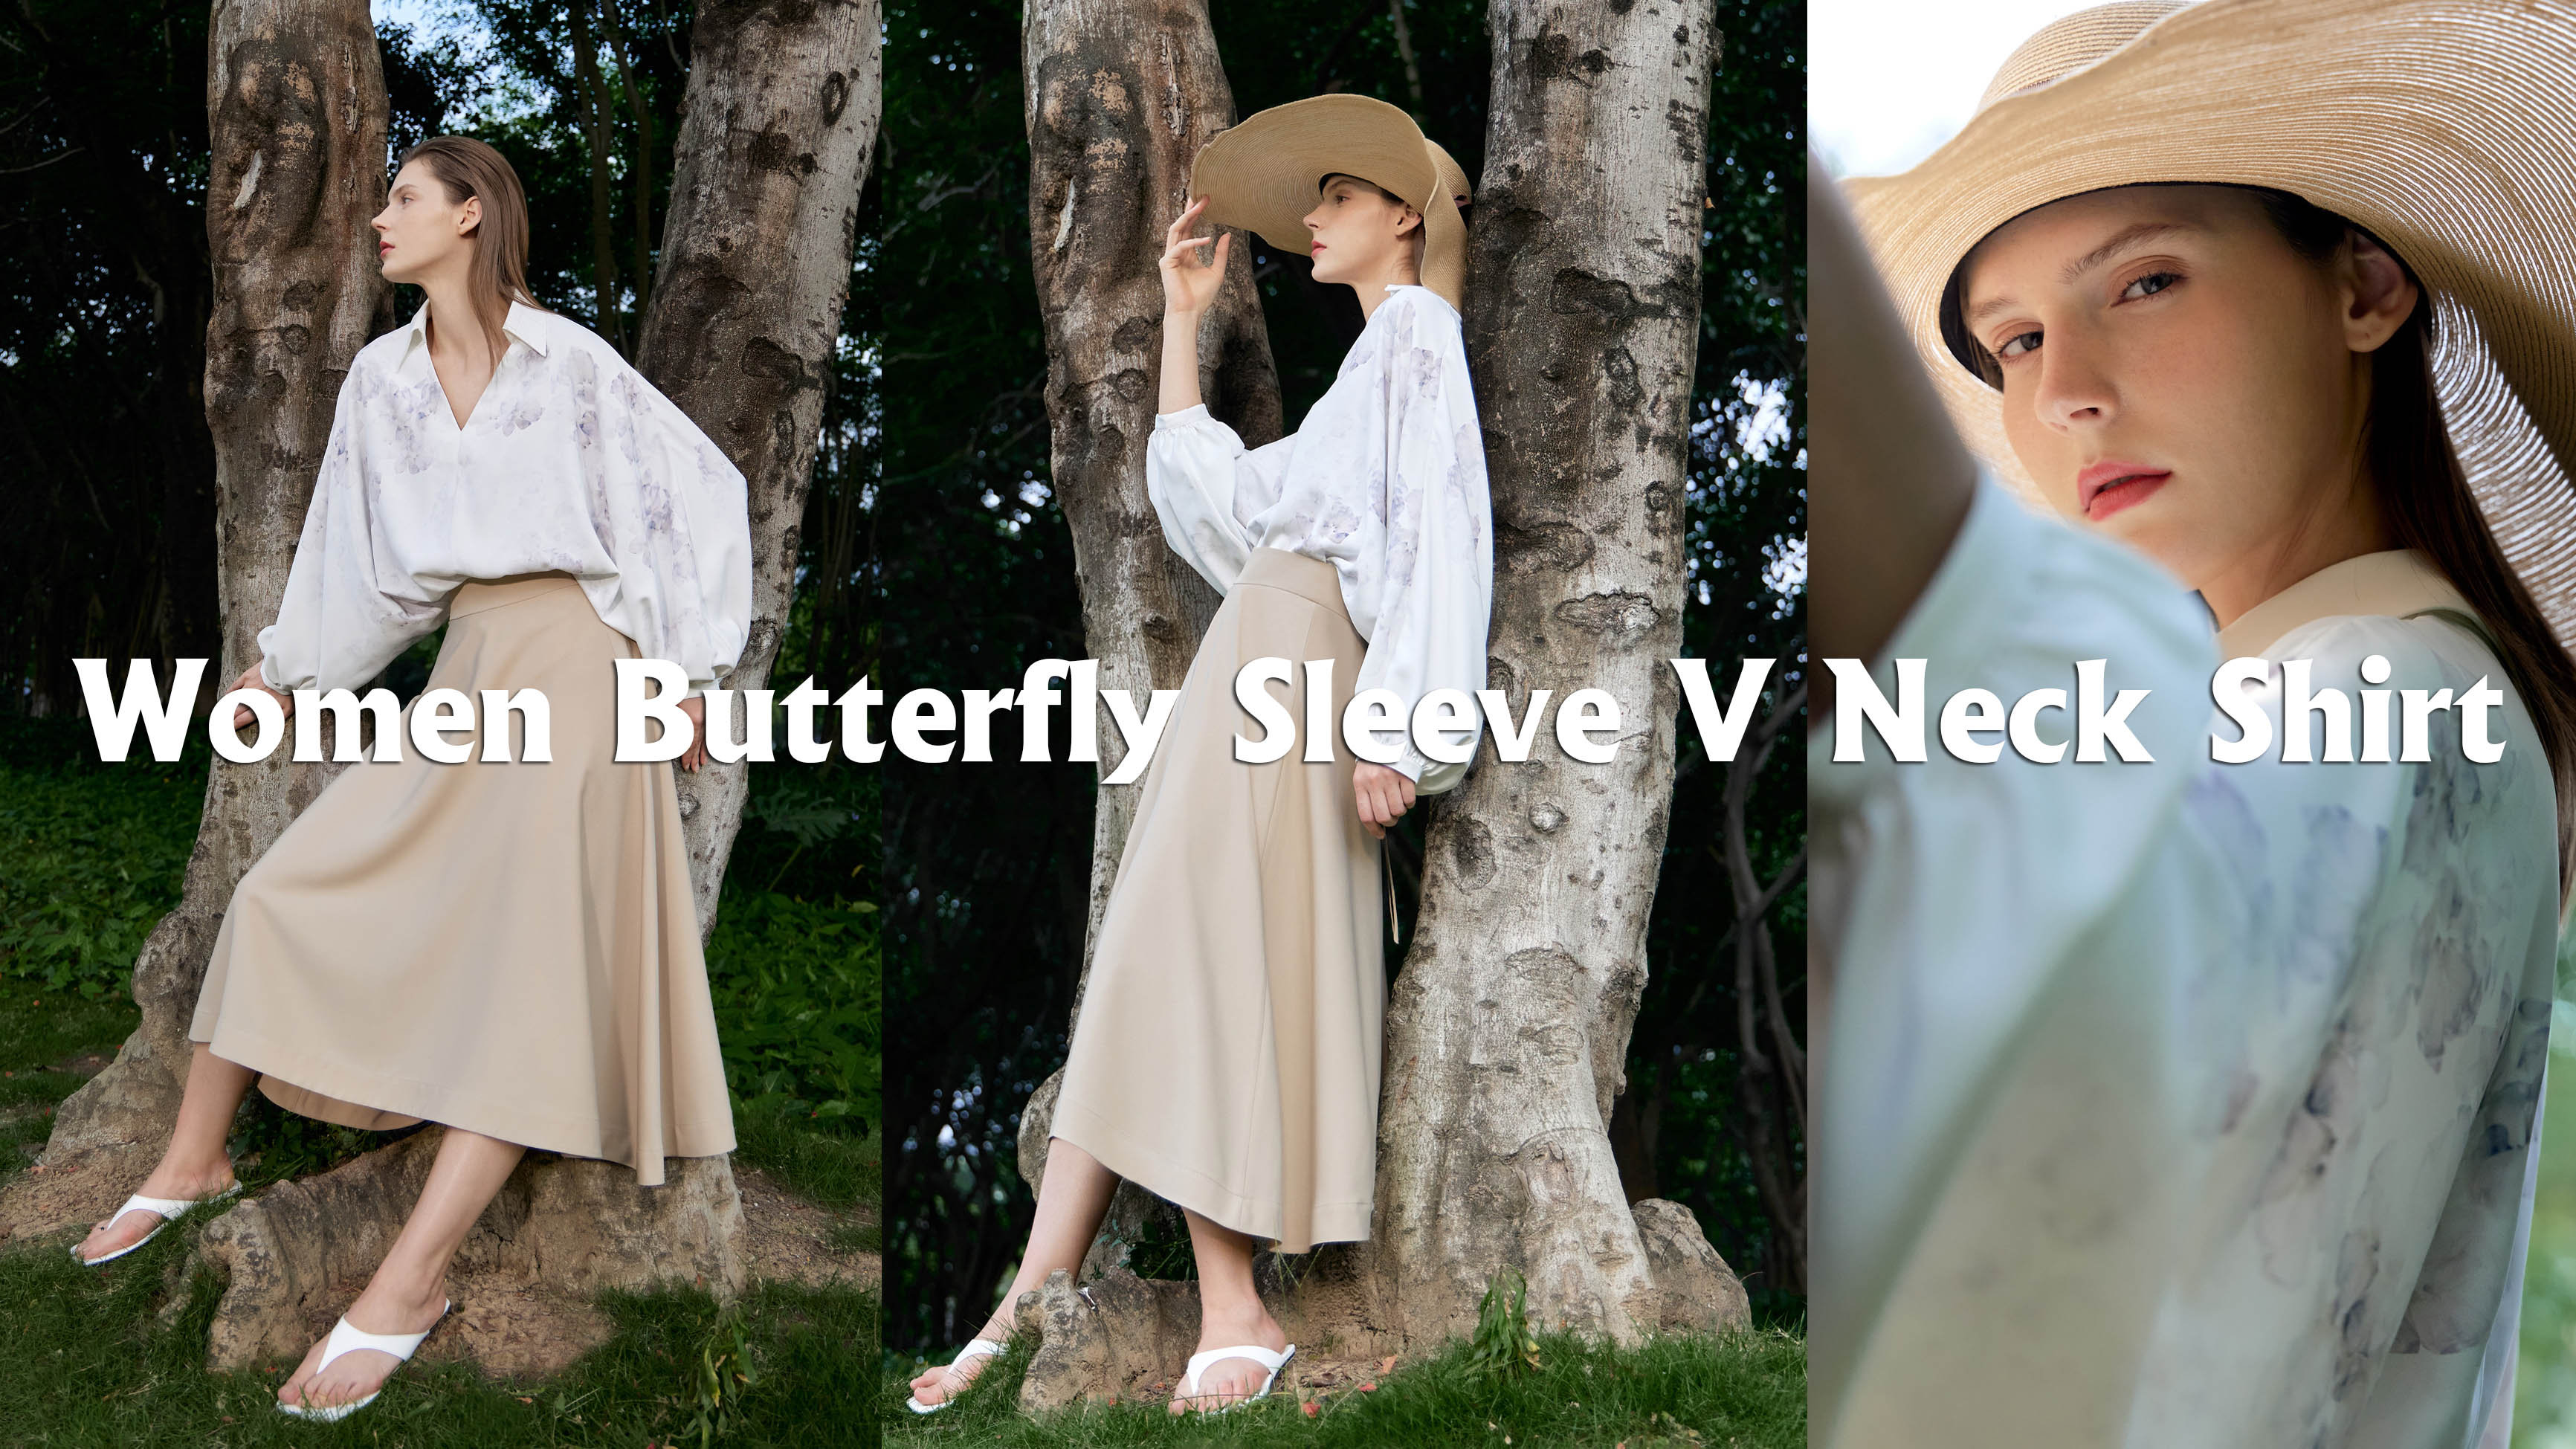 Women Butterfly Sleeve V Neck Shirt Products |Auschalink